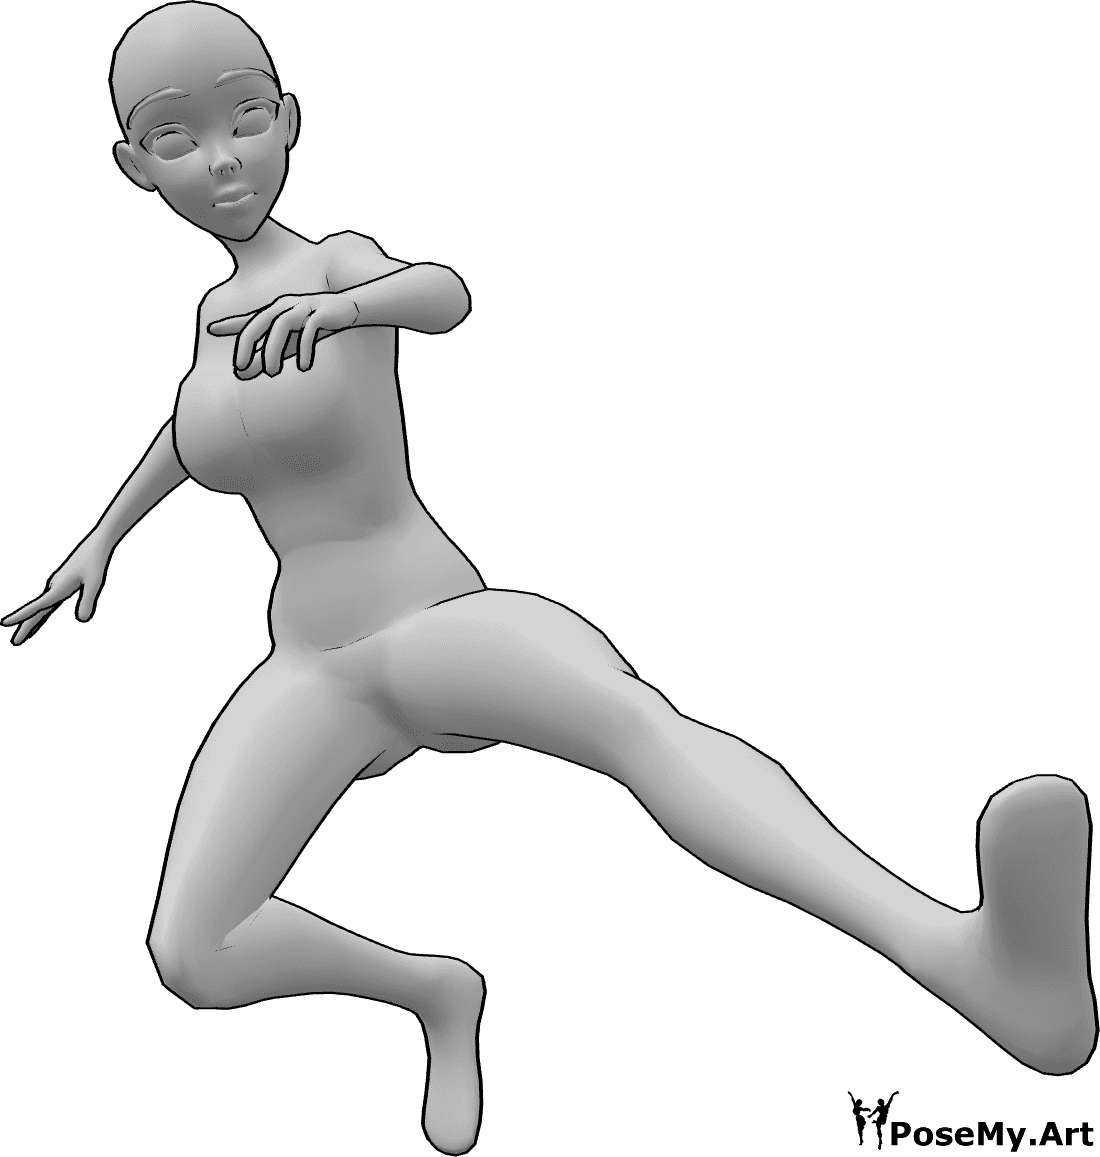 Referencia de poses- Postura de patada dinámica anime - Mujer anime está saltando y pateando en el aire con el pie izquierdo, pose de patada dinámica.